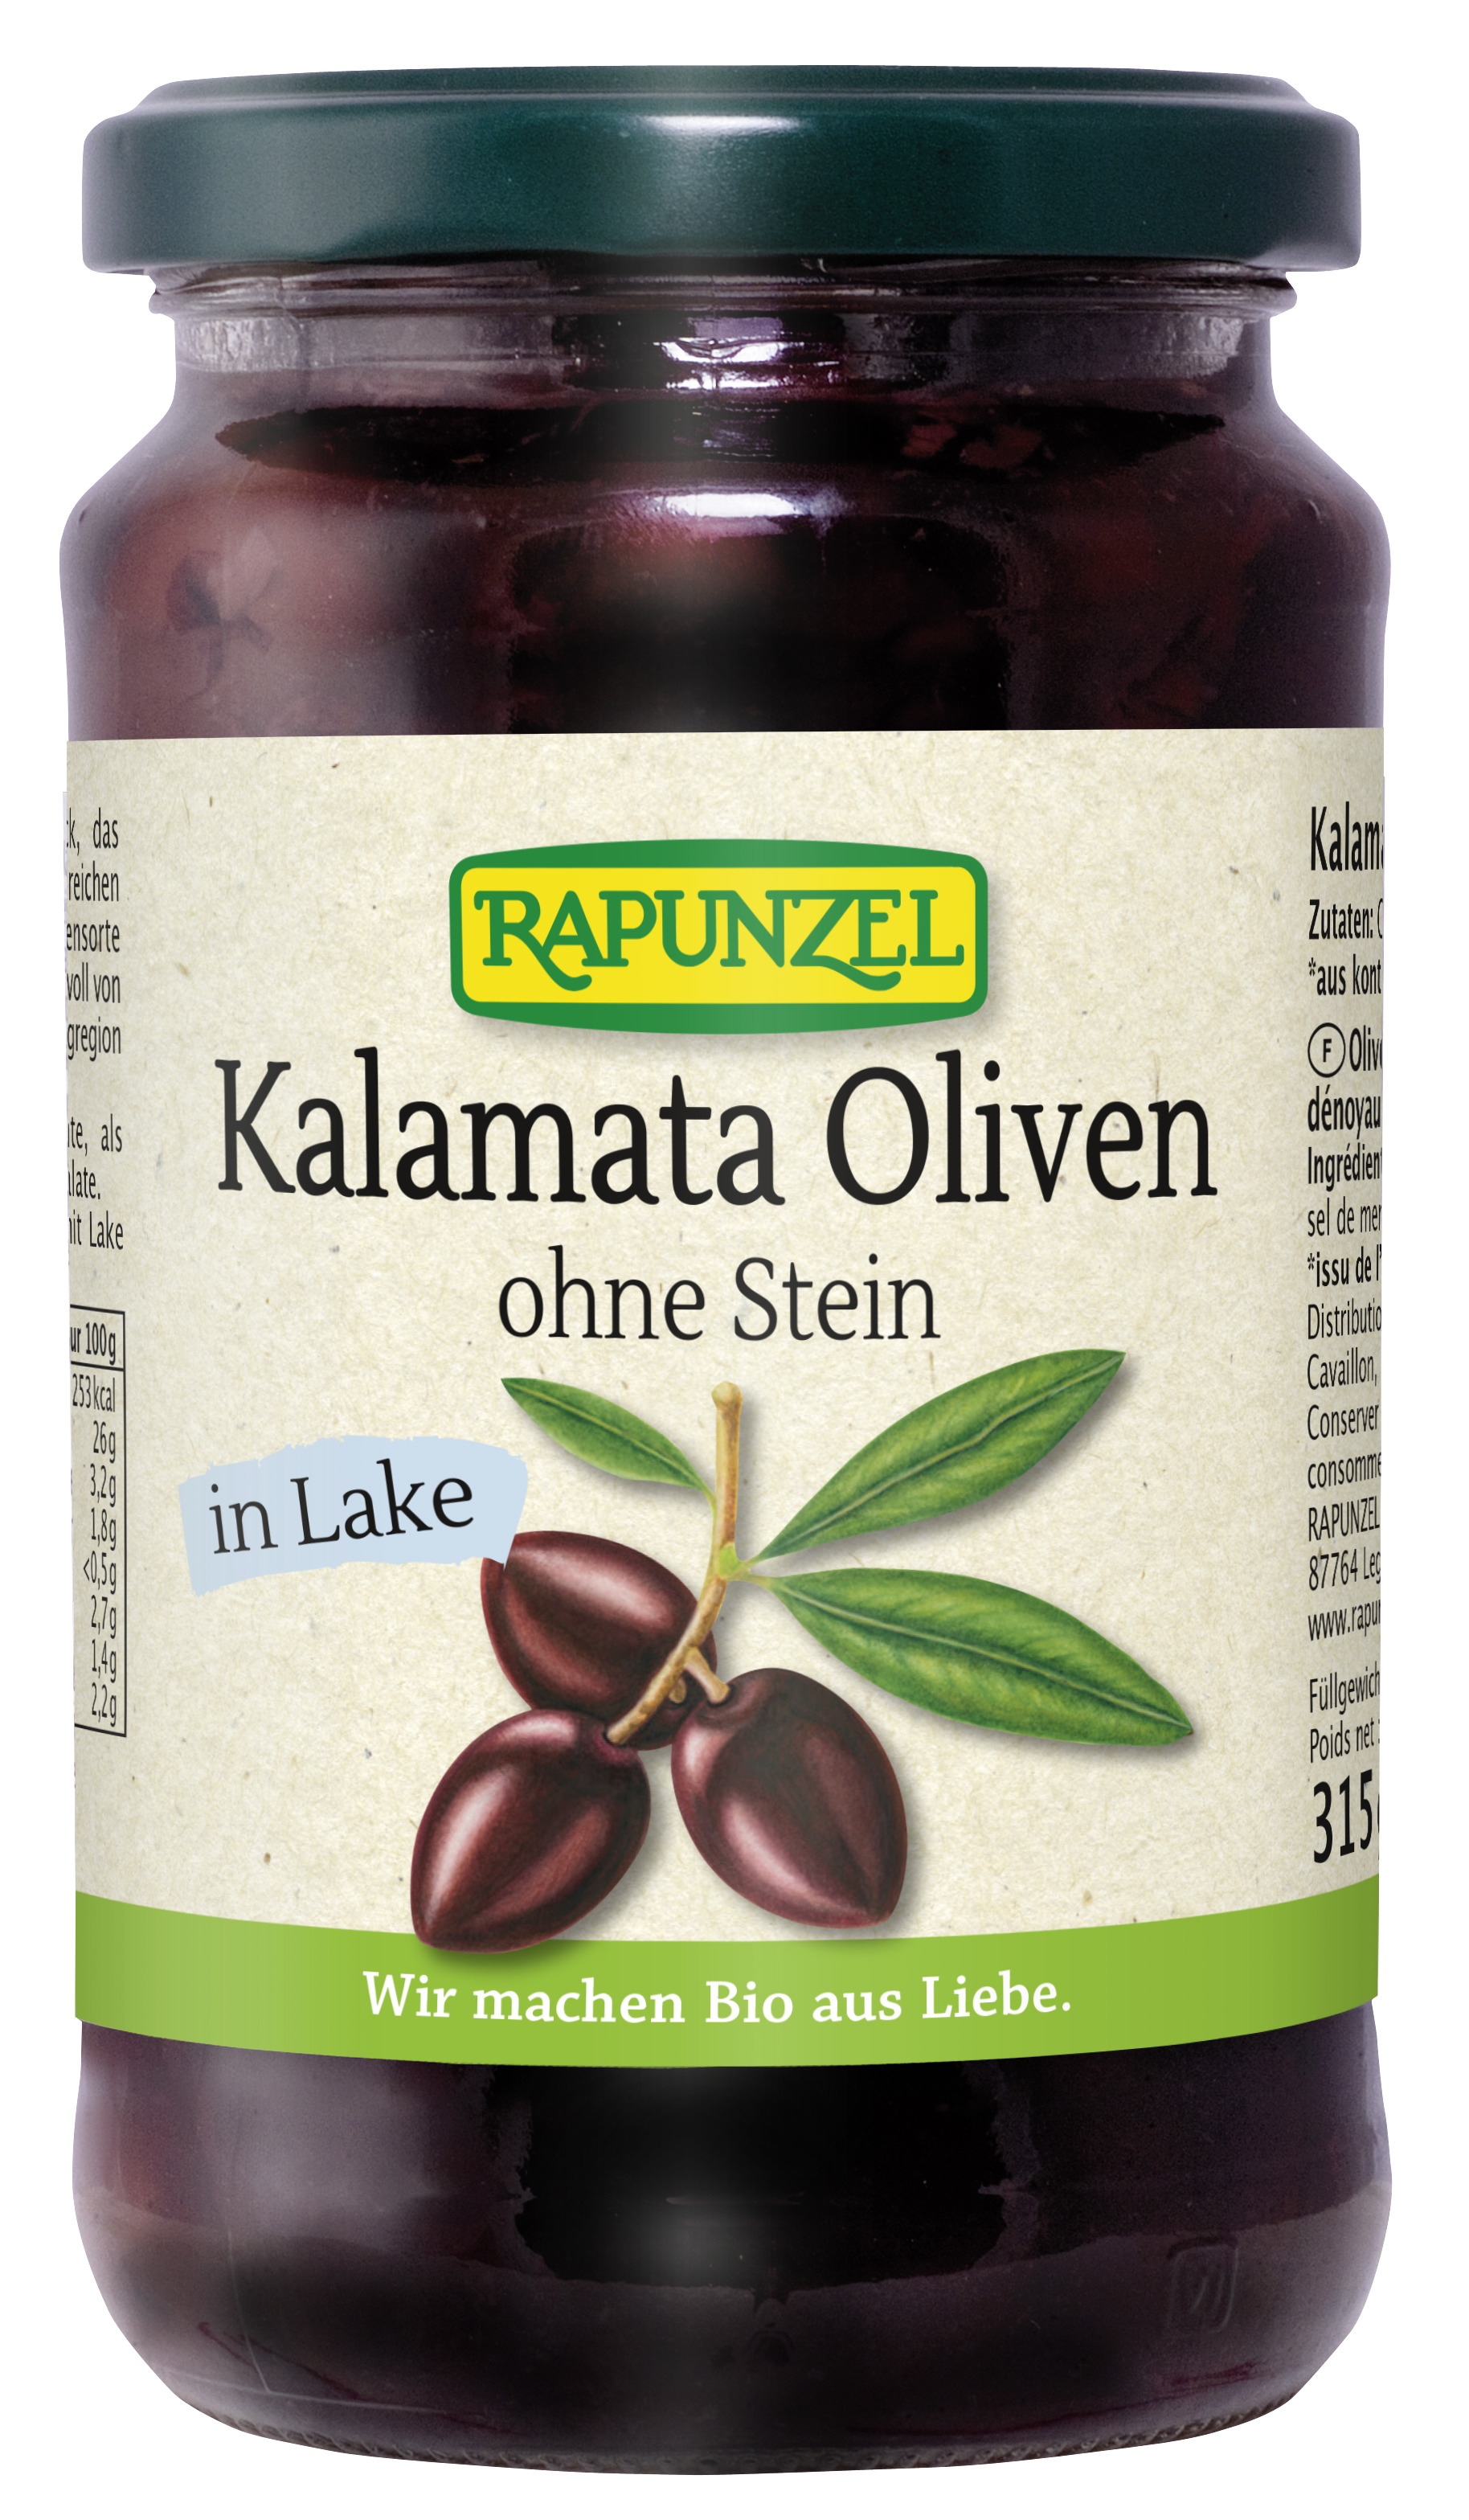 Oliven Kalamata violett, ohne Stein in Lake, 315g